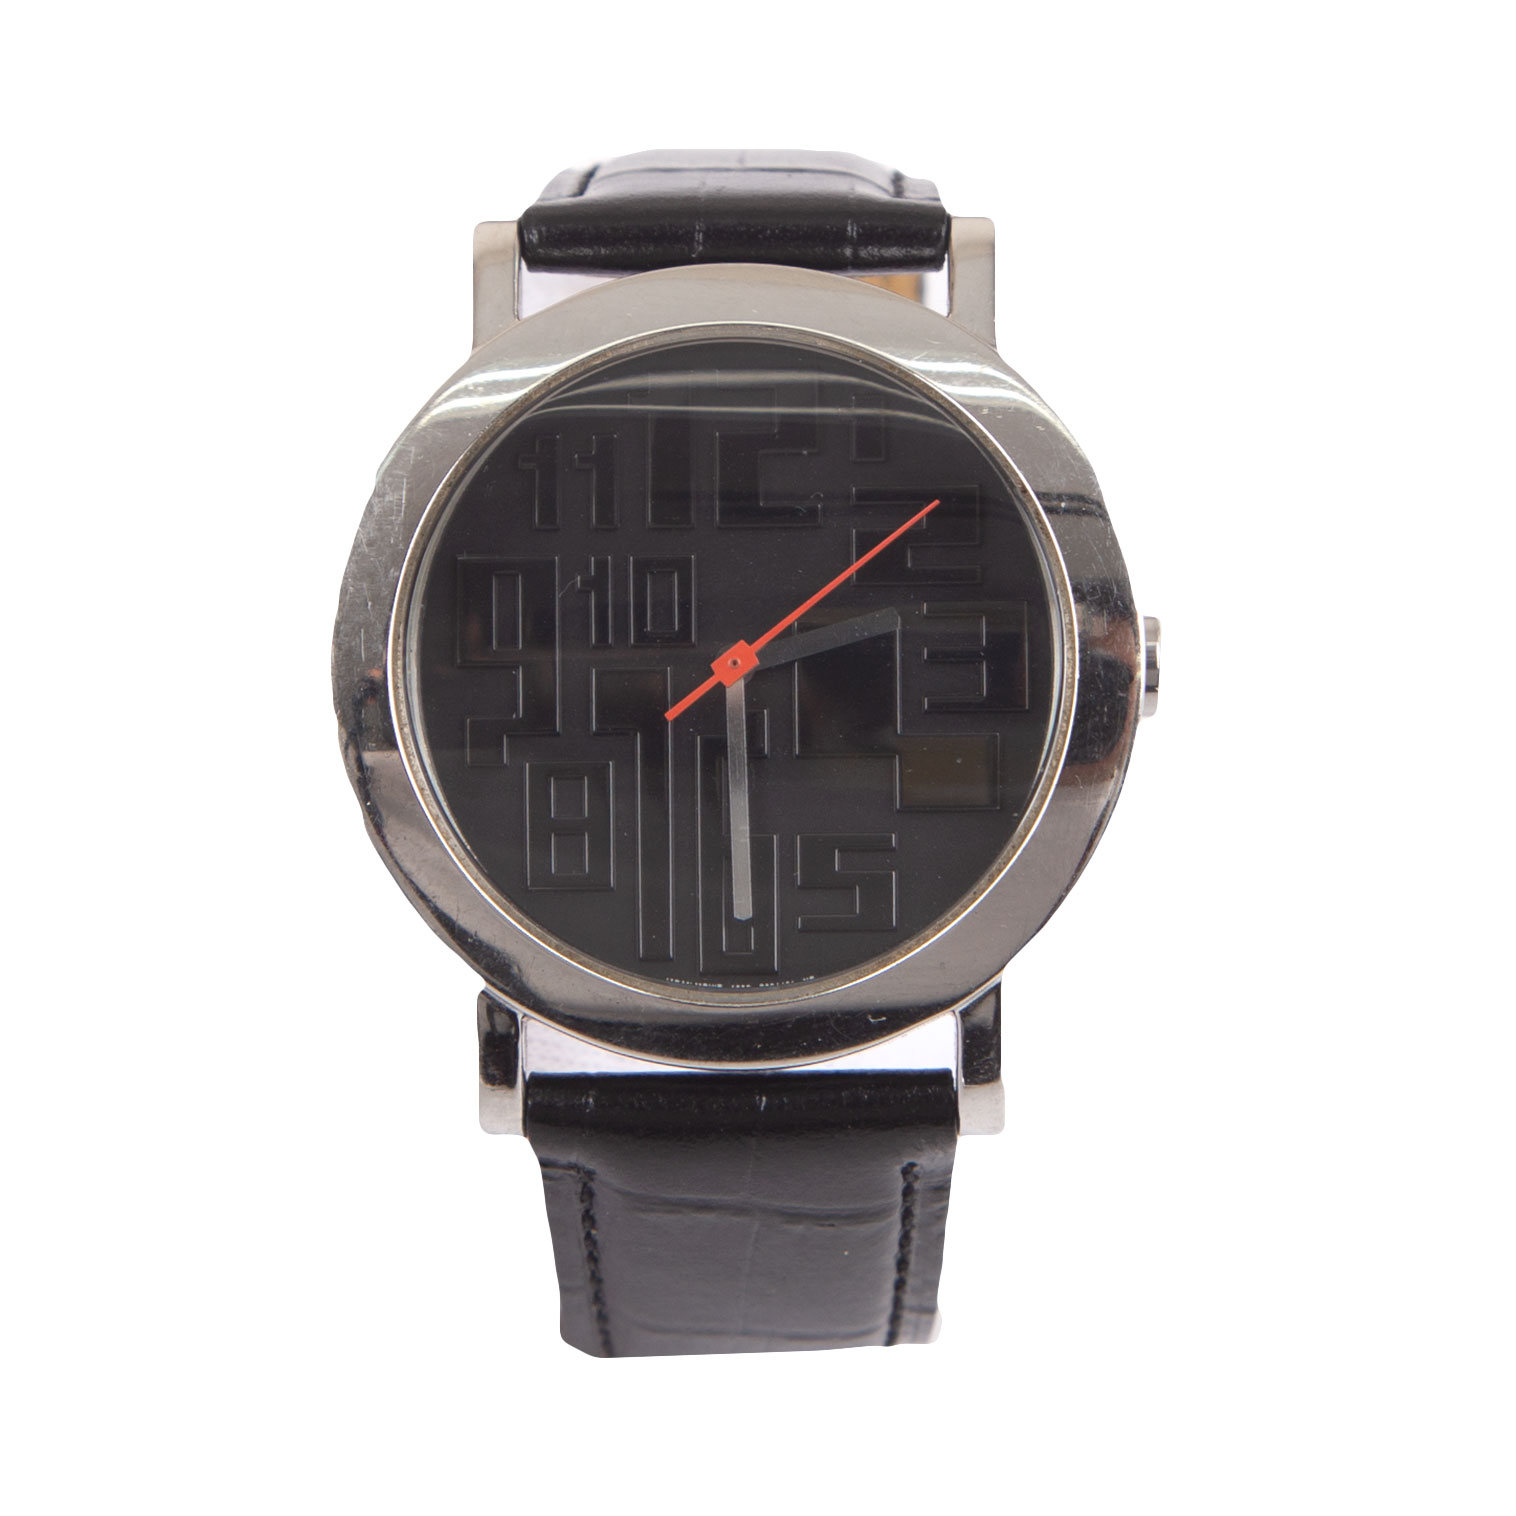 17,395円Jean-Paul GAULTIER ロゴ入り腕時計